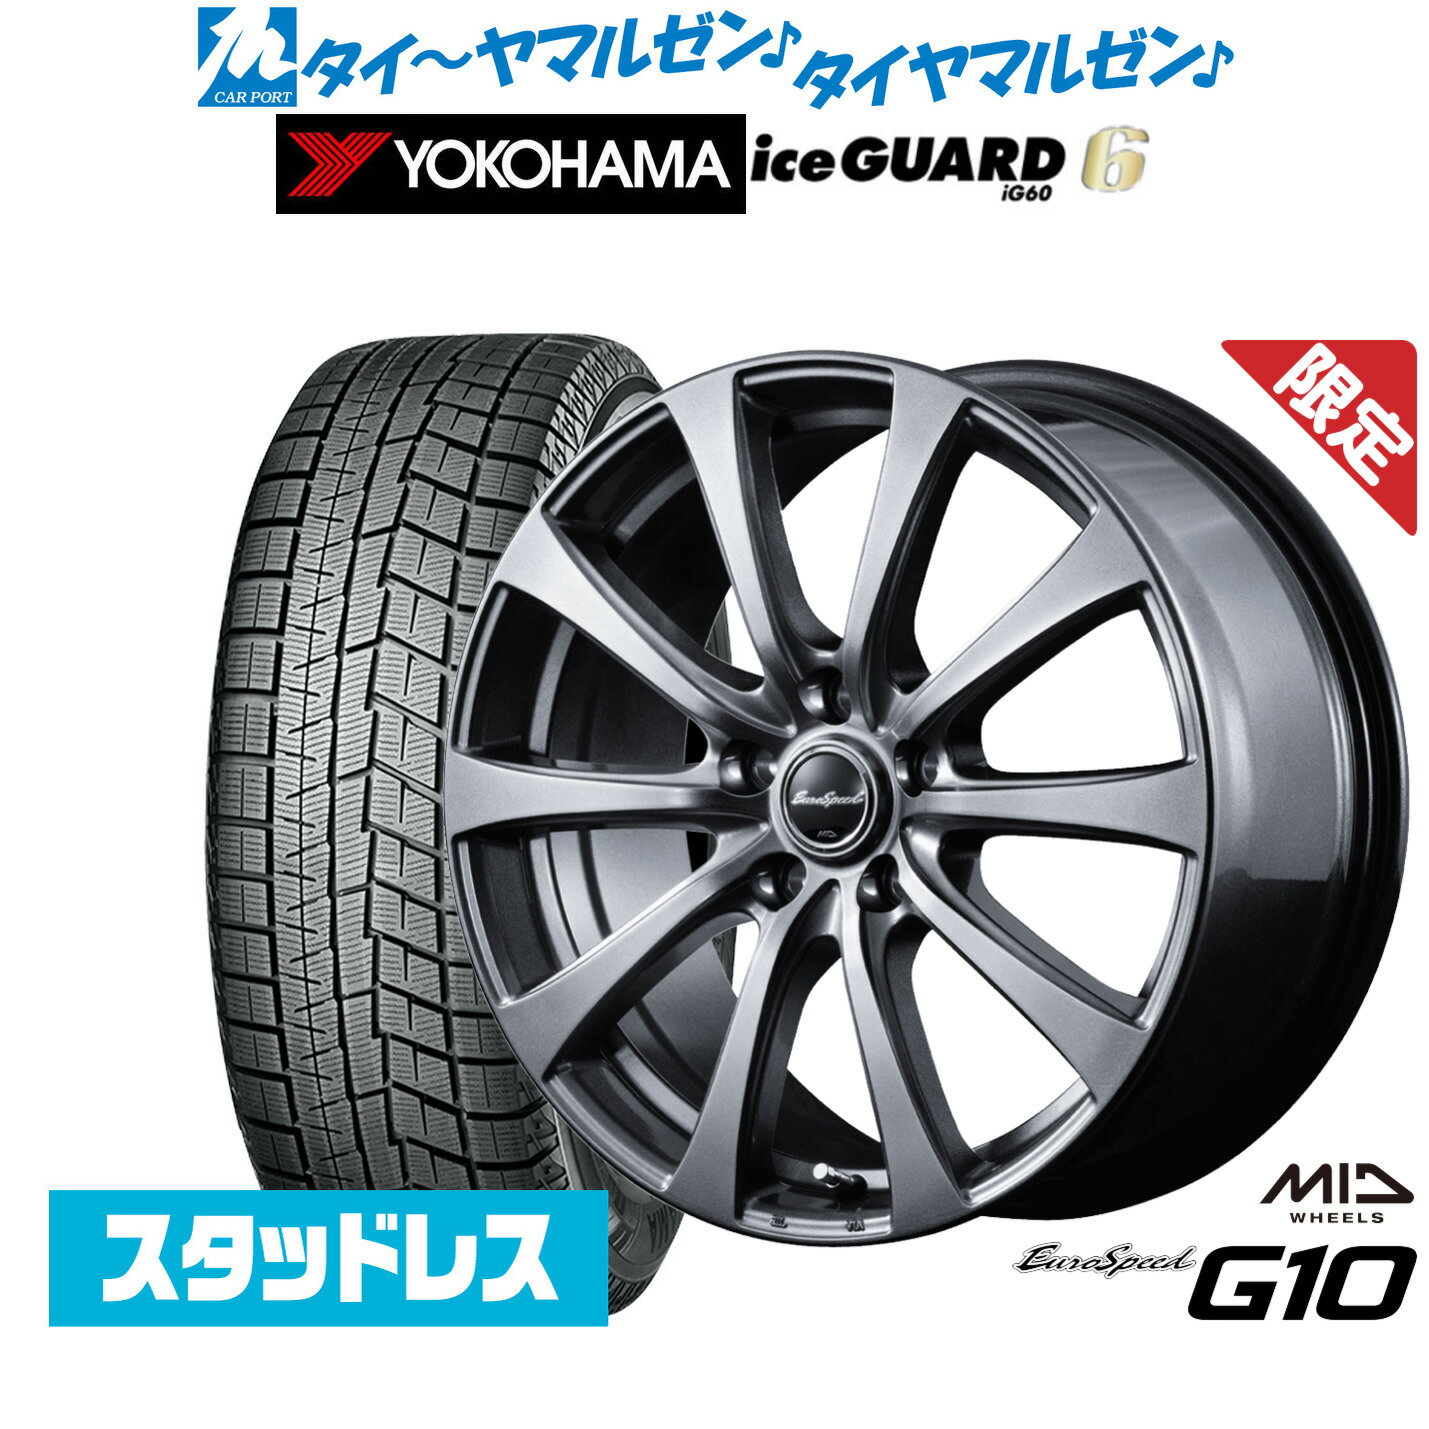 【数量限定】新品 スタッドレスタイヤ ホイール4本セットMID ユーロスピード G-1016インチ 6.5Jヨコハマ アイスガード IG60215/65R16